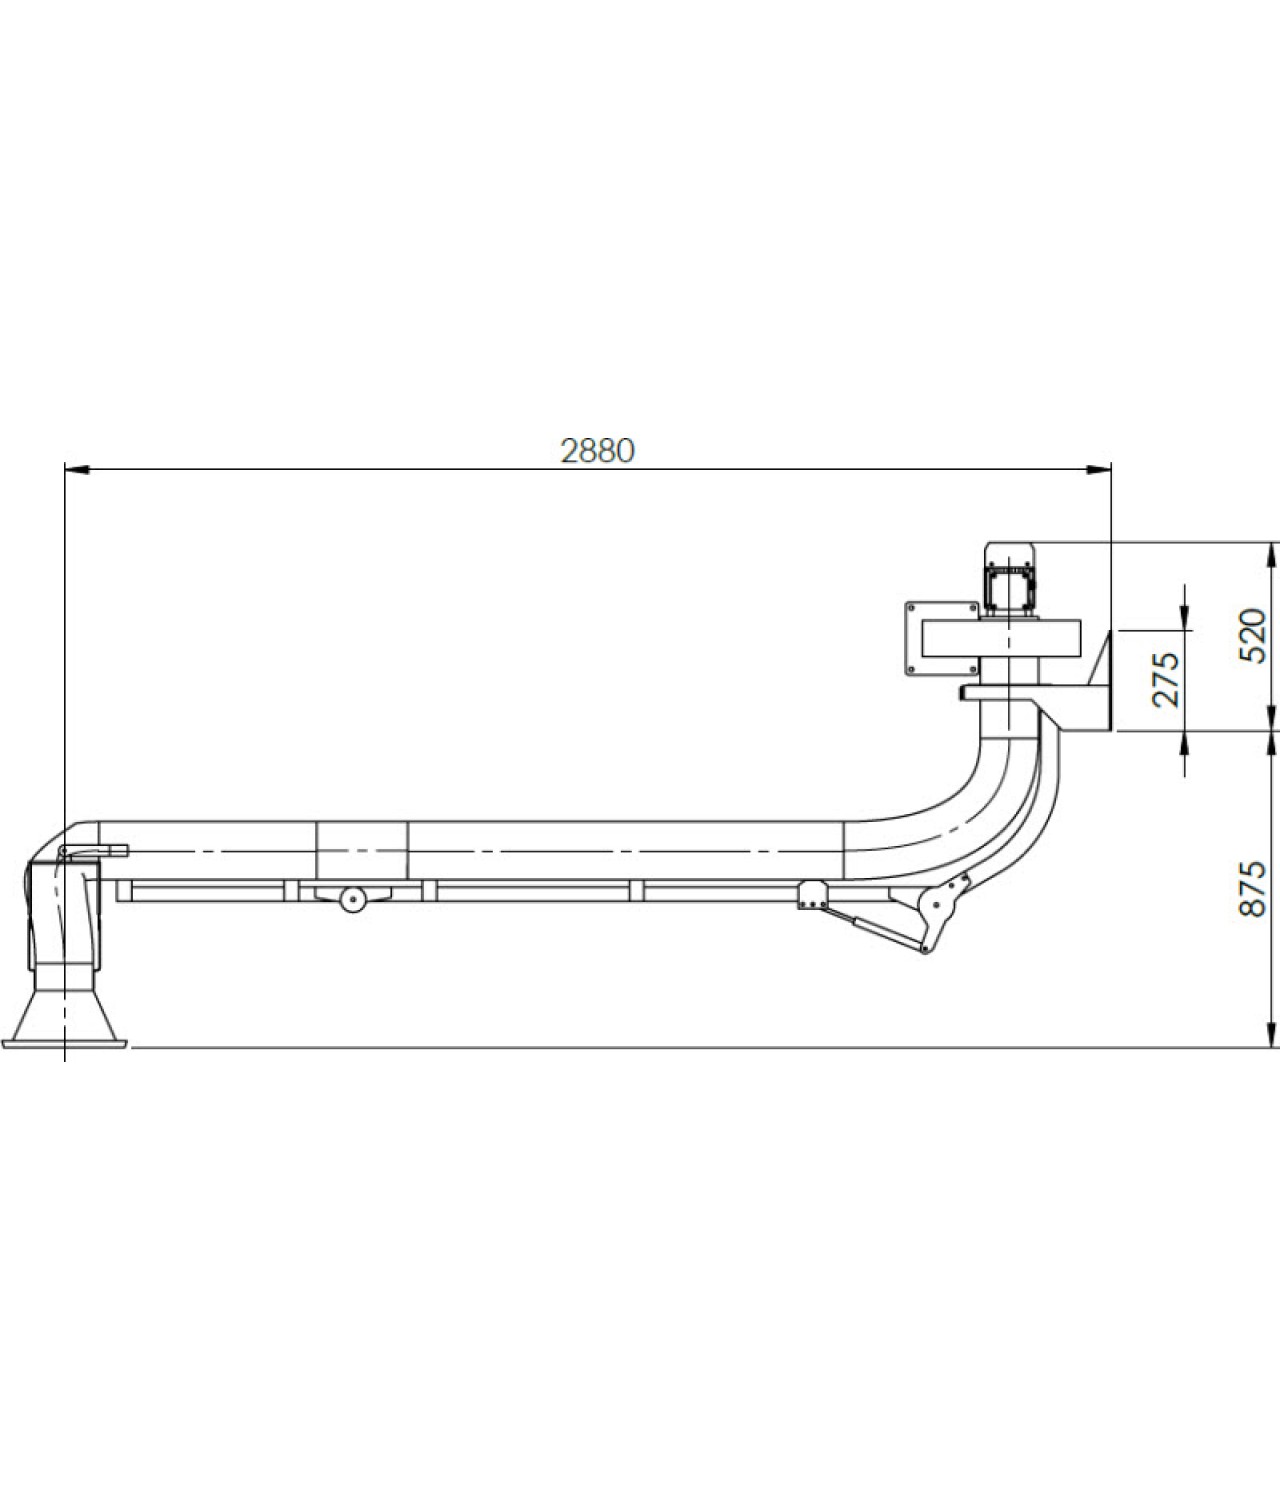 Suvirinimo dujų nutraukimo sistema SDNS-055 ≤1000 m³/h - brėžinys Nr.2